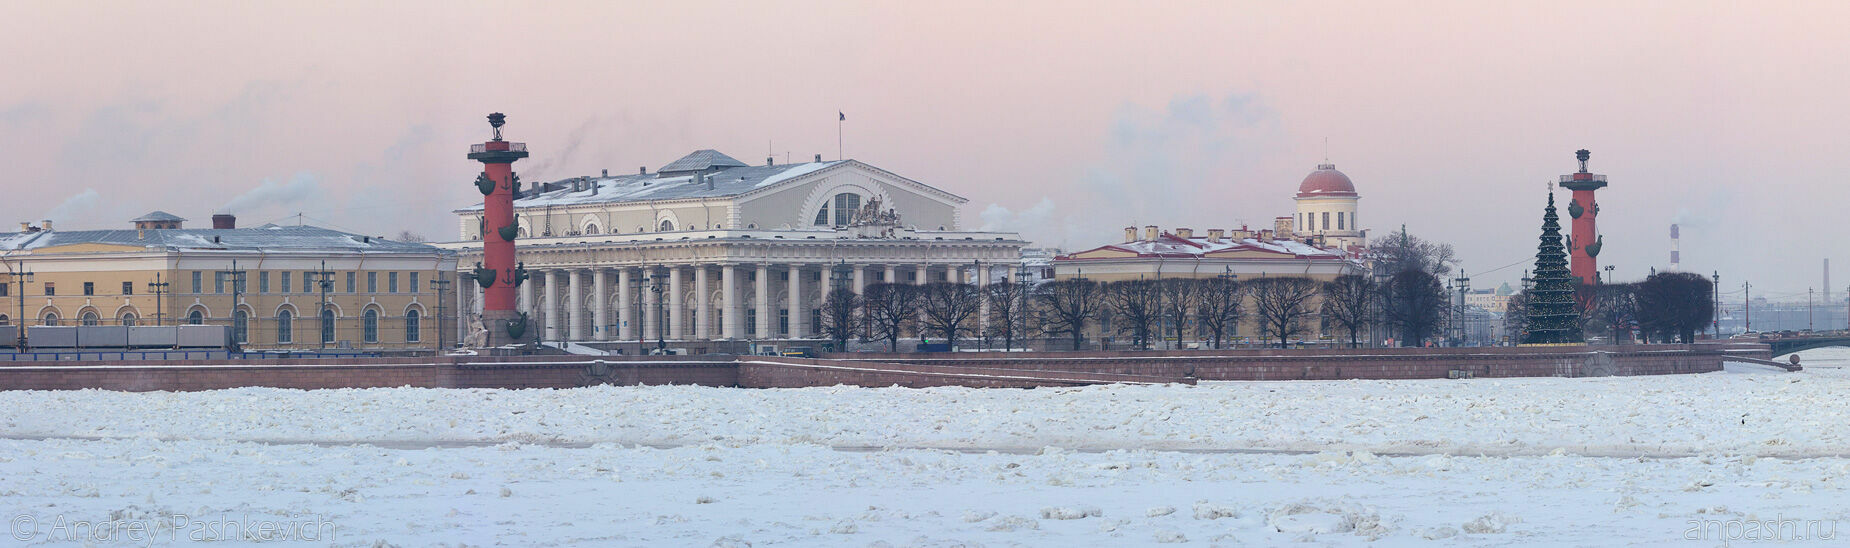 МЧС не обнаружил источников неприятного запаха в Петербурге